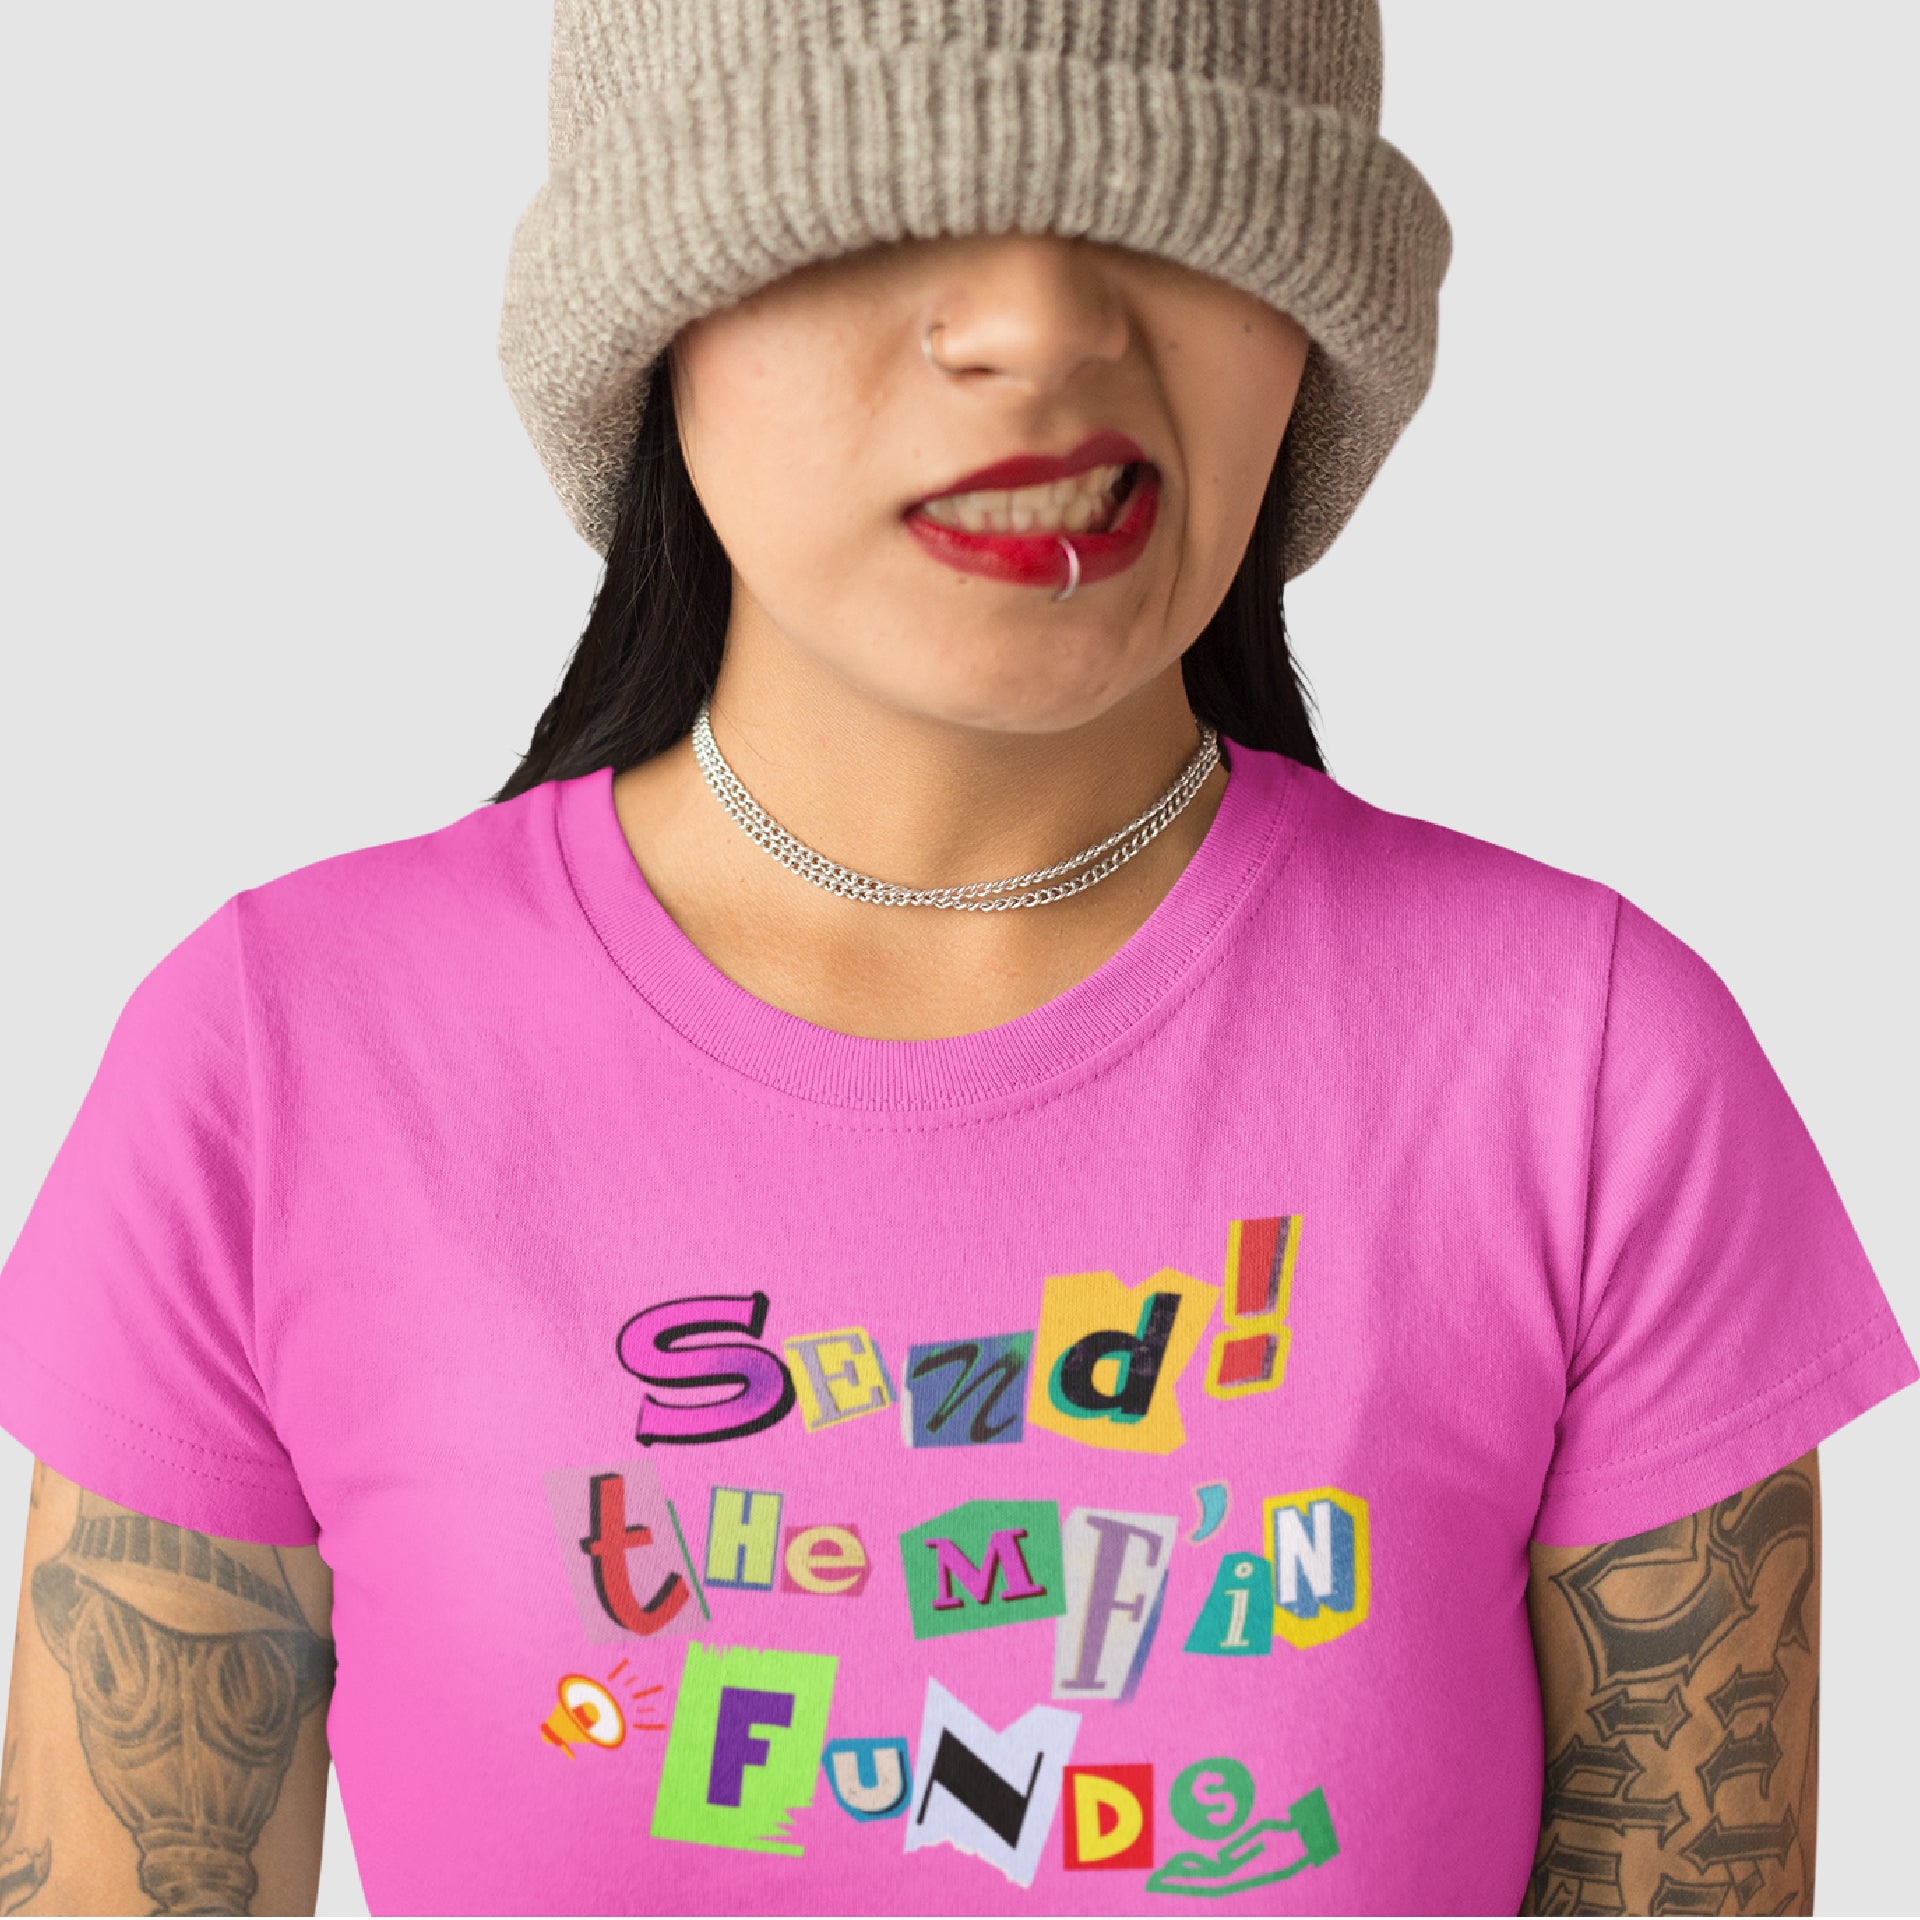 Send Fund$ T-Shirt